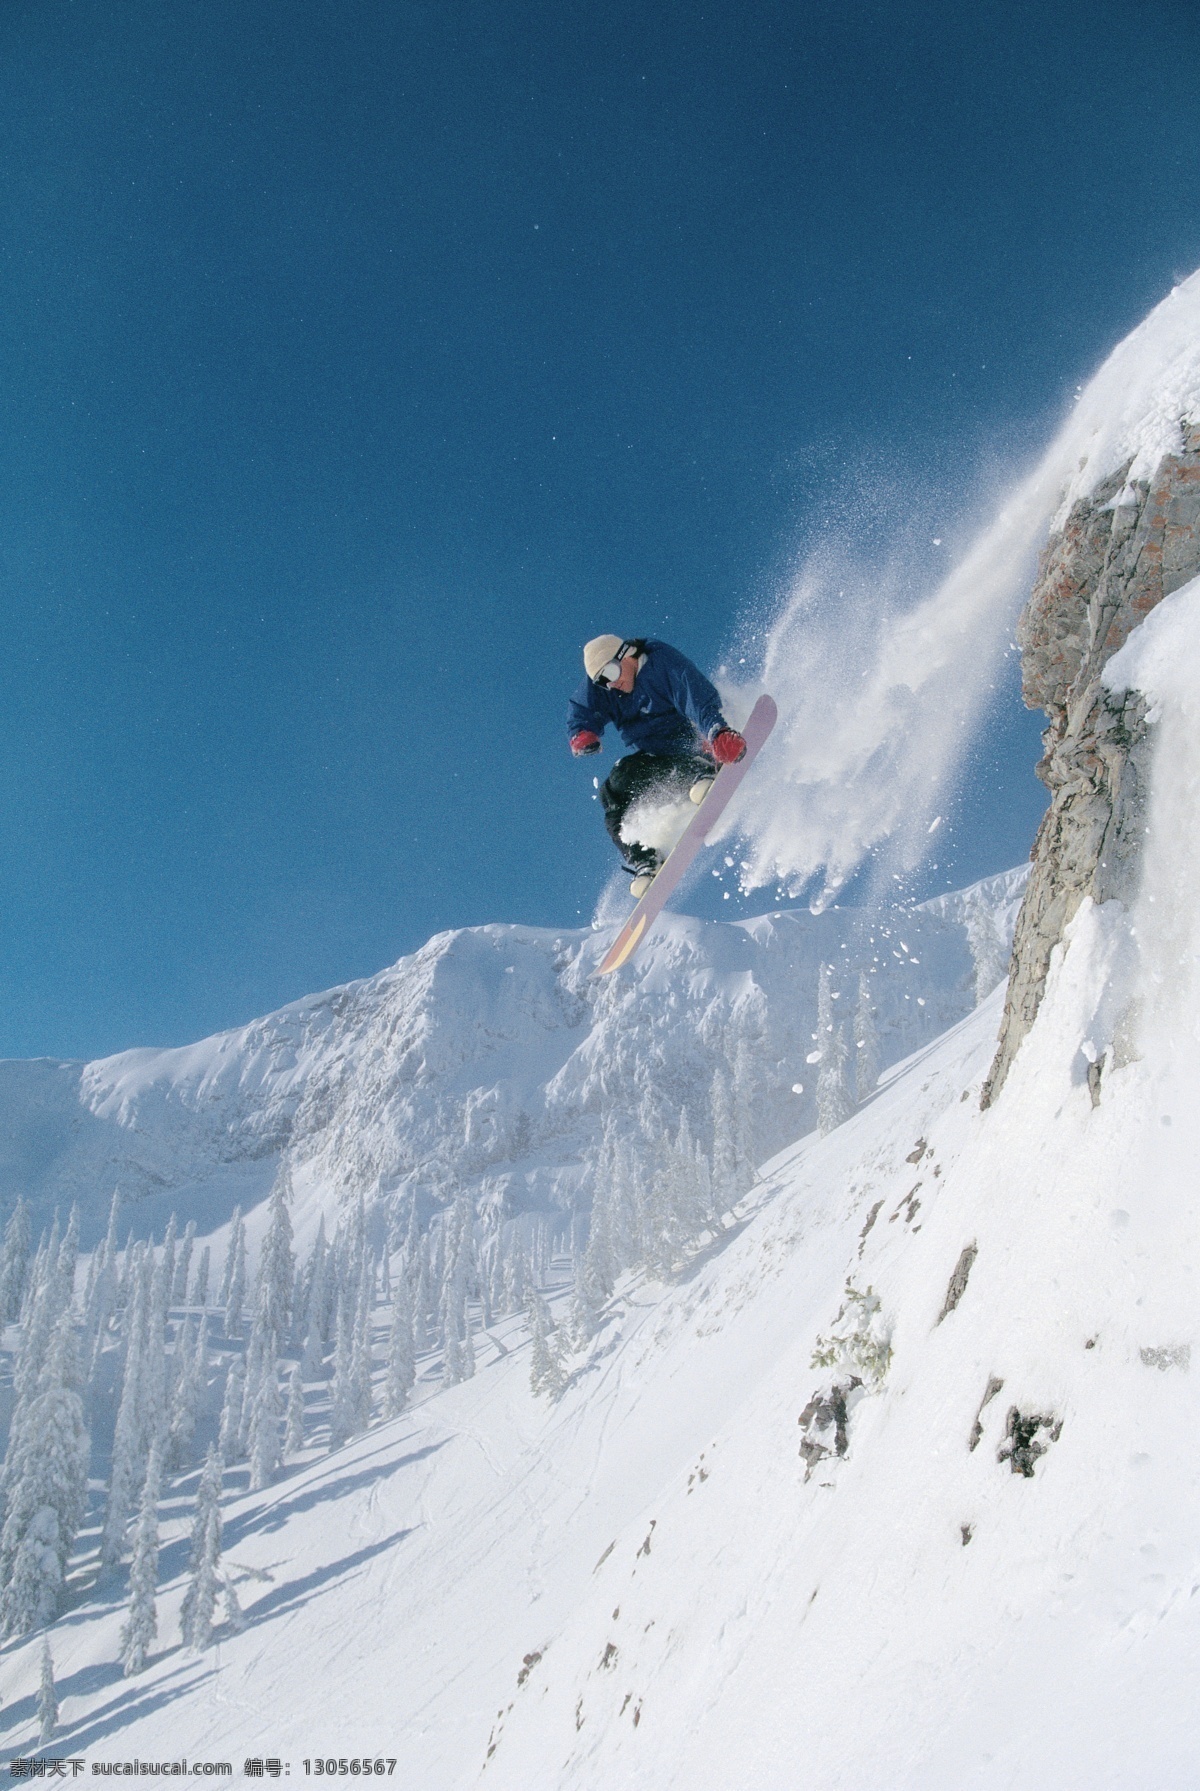 飞跃 滑雪 运动员 高清 雪地运动 划雪运动 极限运动 体育项目 腾空 下滑 速度 运动图片 生活百科 雪山 风景 摄影图片 高清图片 体育运动 白色